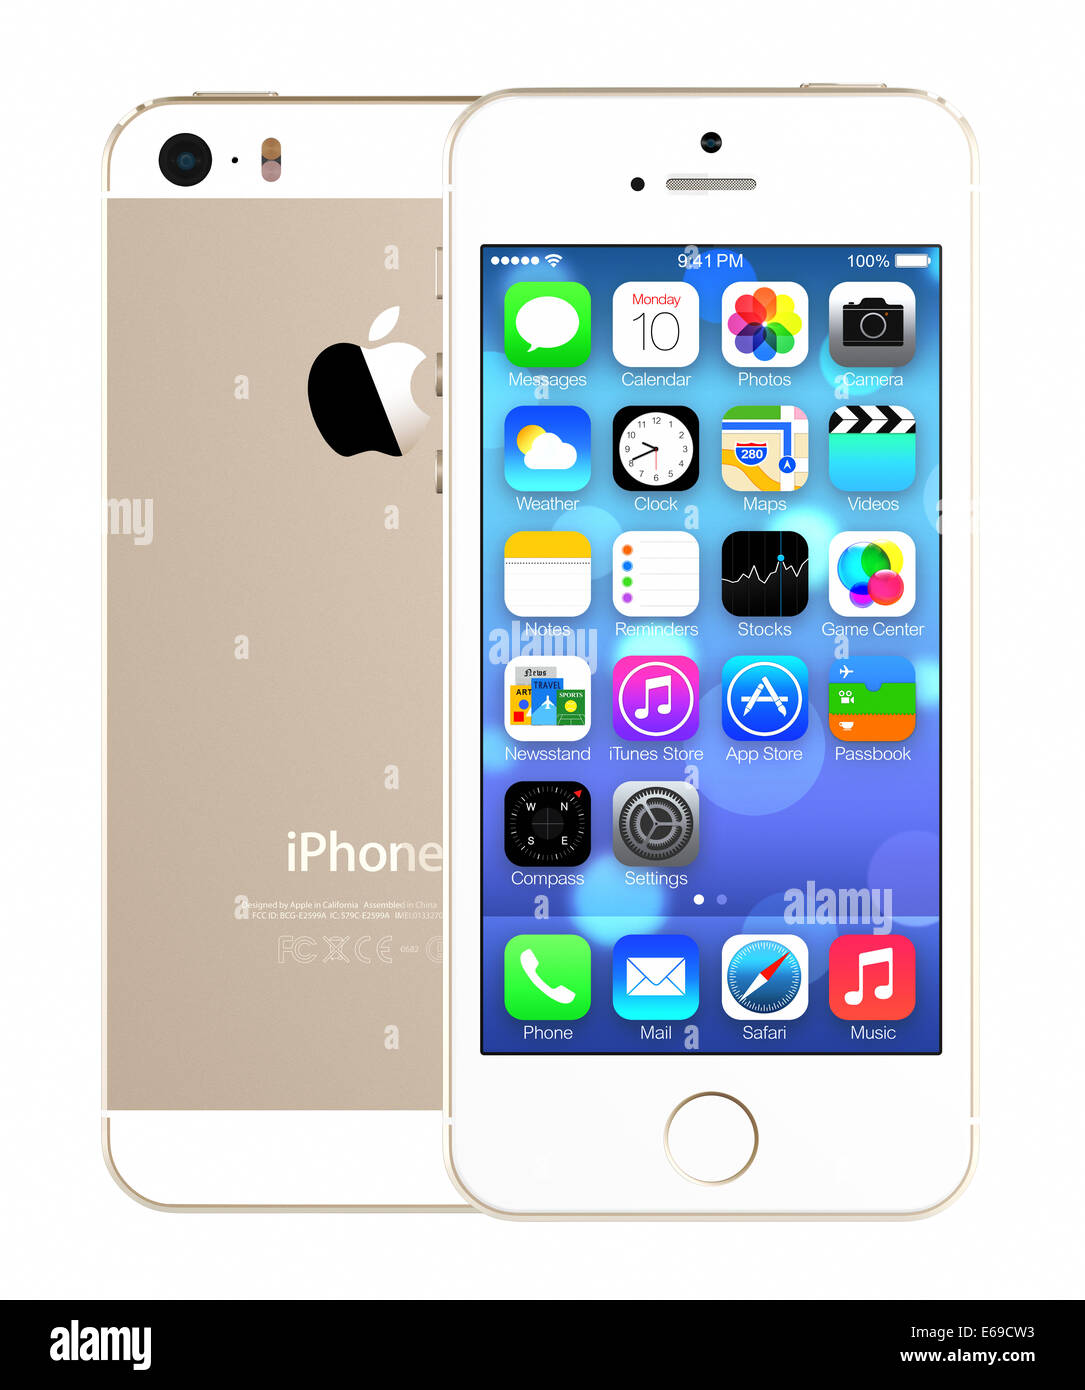 IPhone 5s che mostra la schermata iniziale con iOS7. Foto Stock